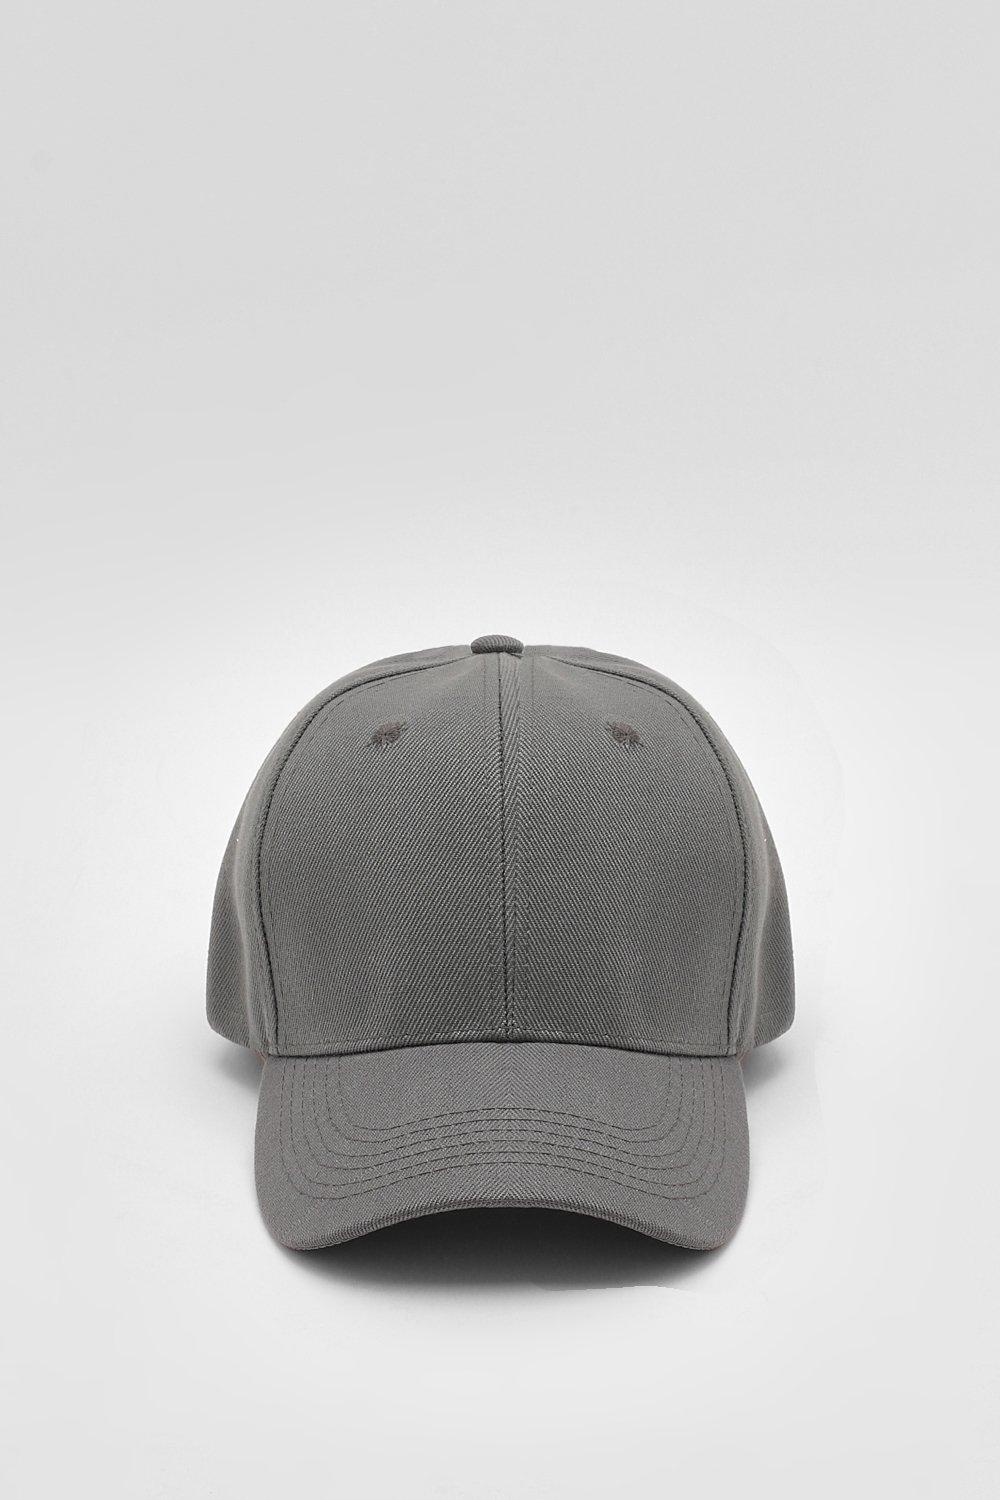 Plain Dark Grey Baseball Cap